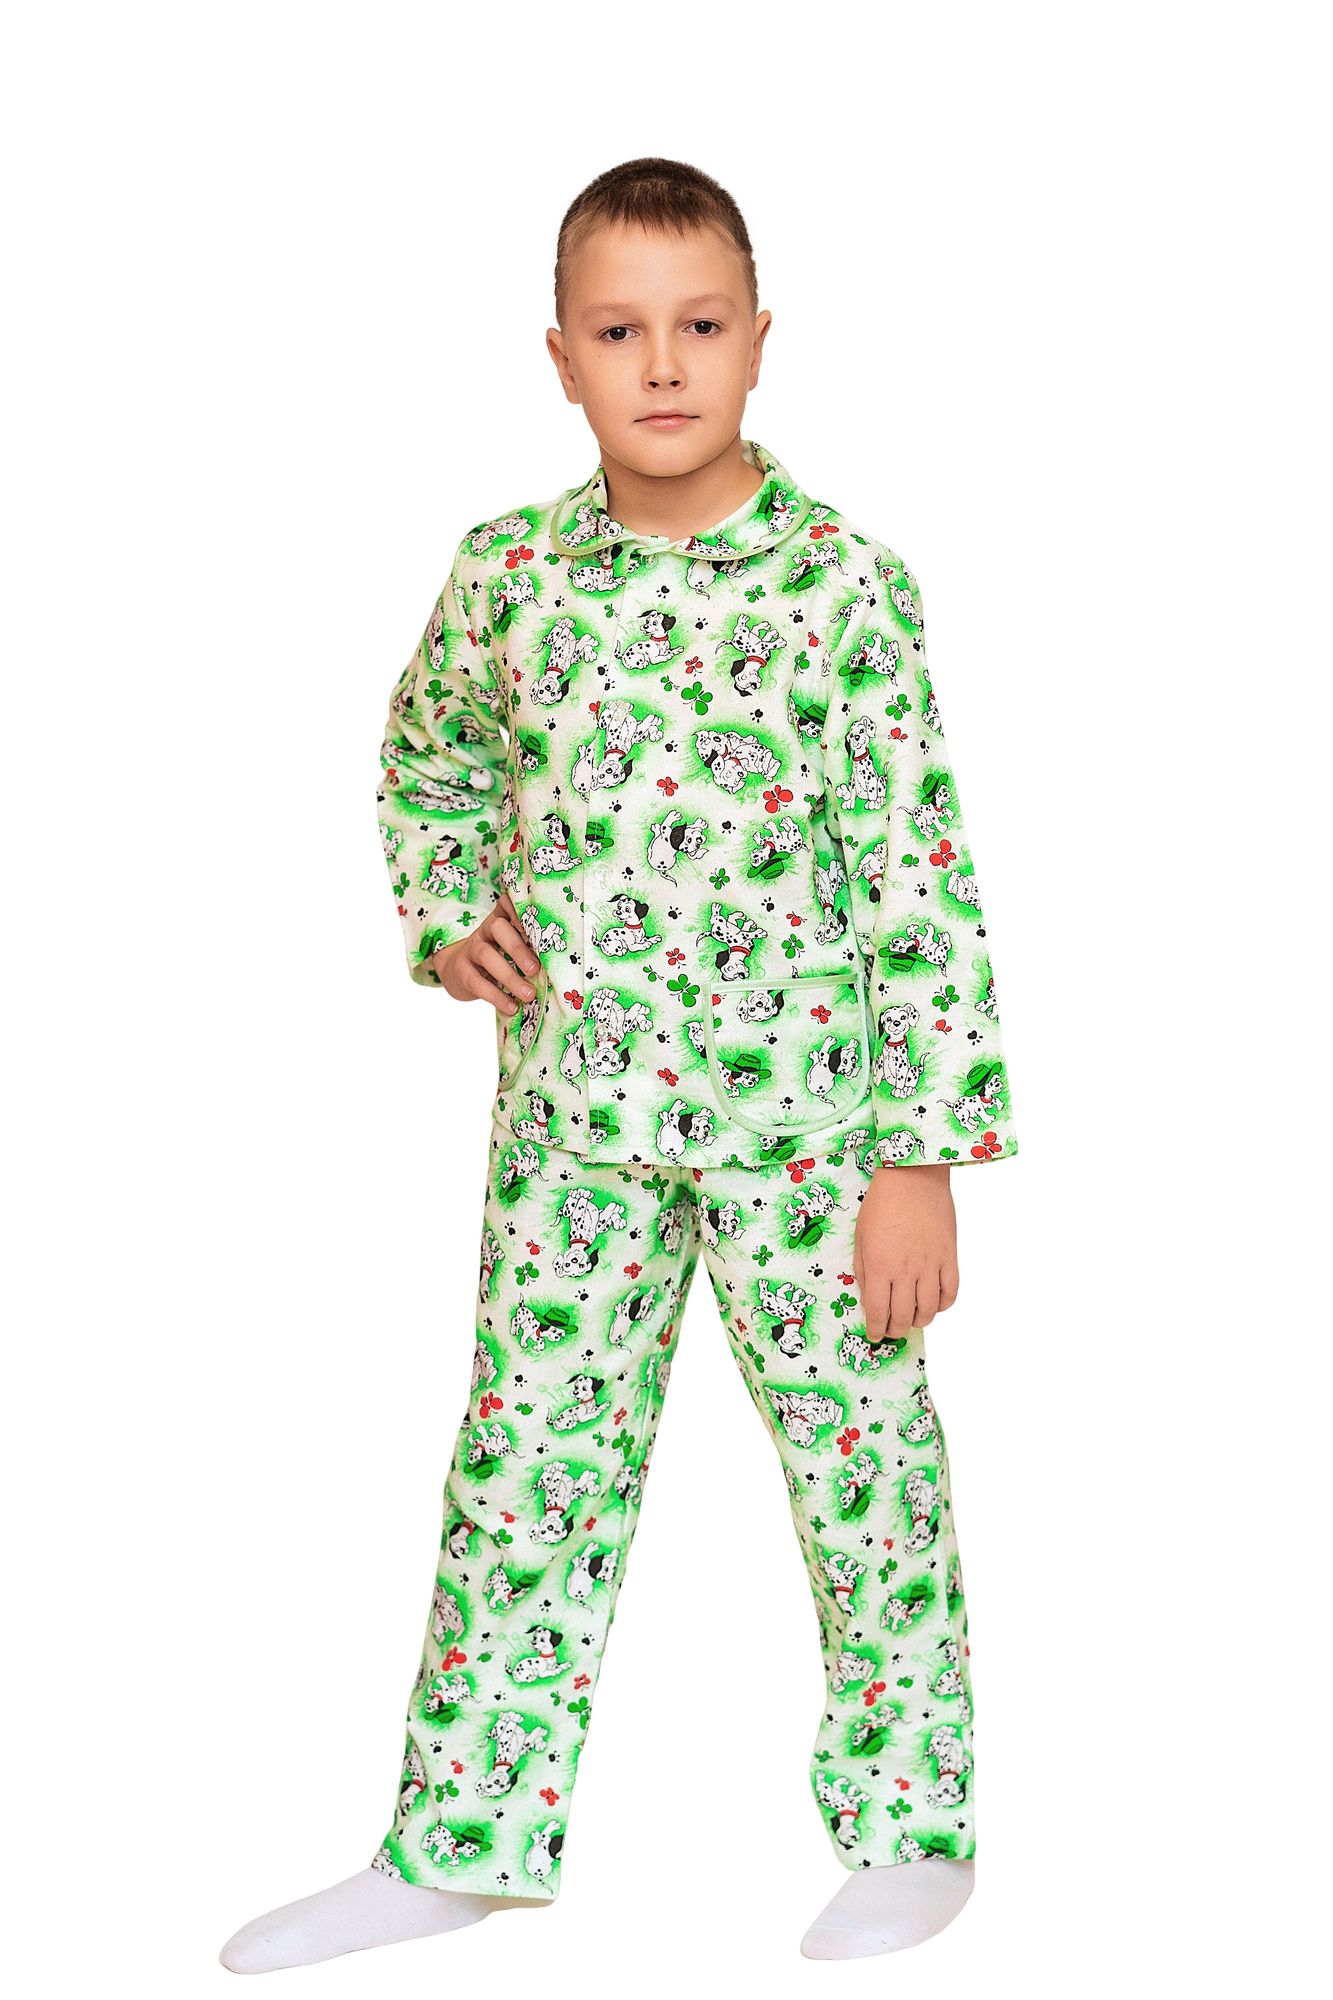 Пижама для мальчика, модель 307, фланель 26 размер, Долматинцы, зеленый 4046-5